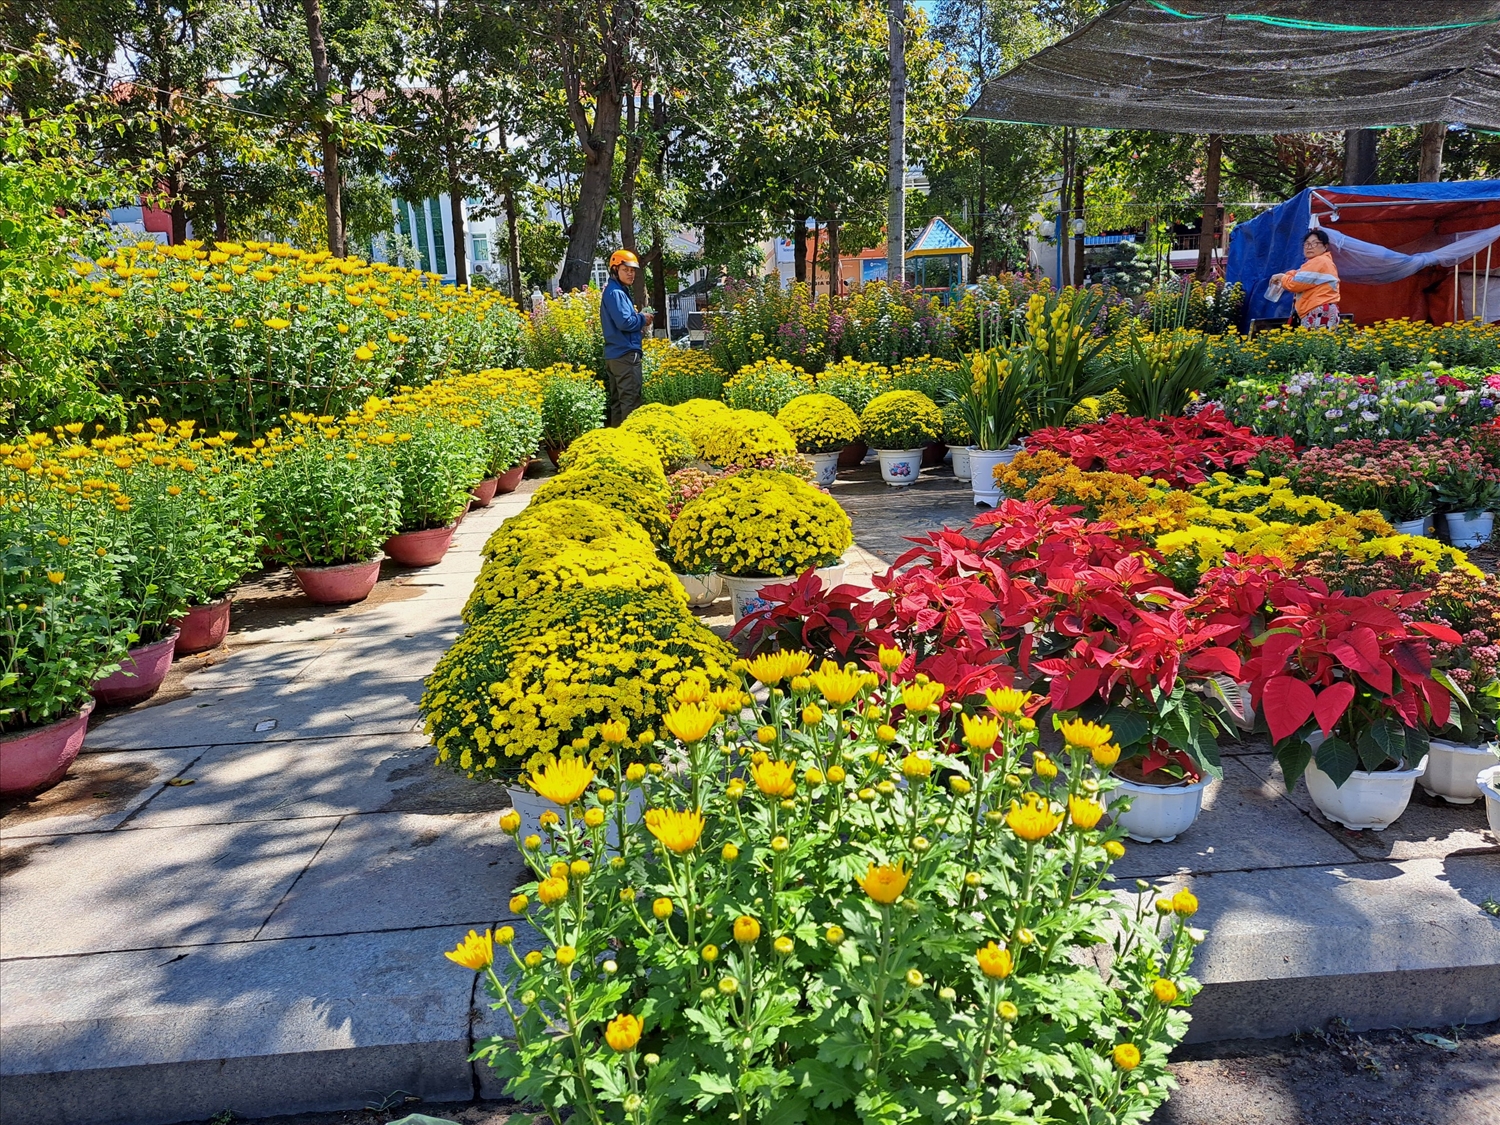 Mặc dù chưa đến giờ khai trương chợ hoa xuân, nhưng không khí mua bán nhộn nhịp diễn ra ở khắp mọi ngã đường hoa trên thành phố biển Quy Nhơn